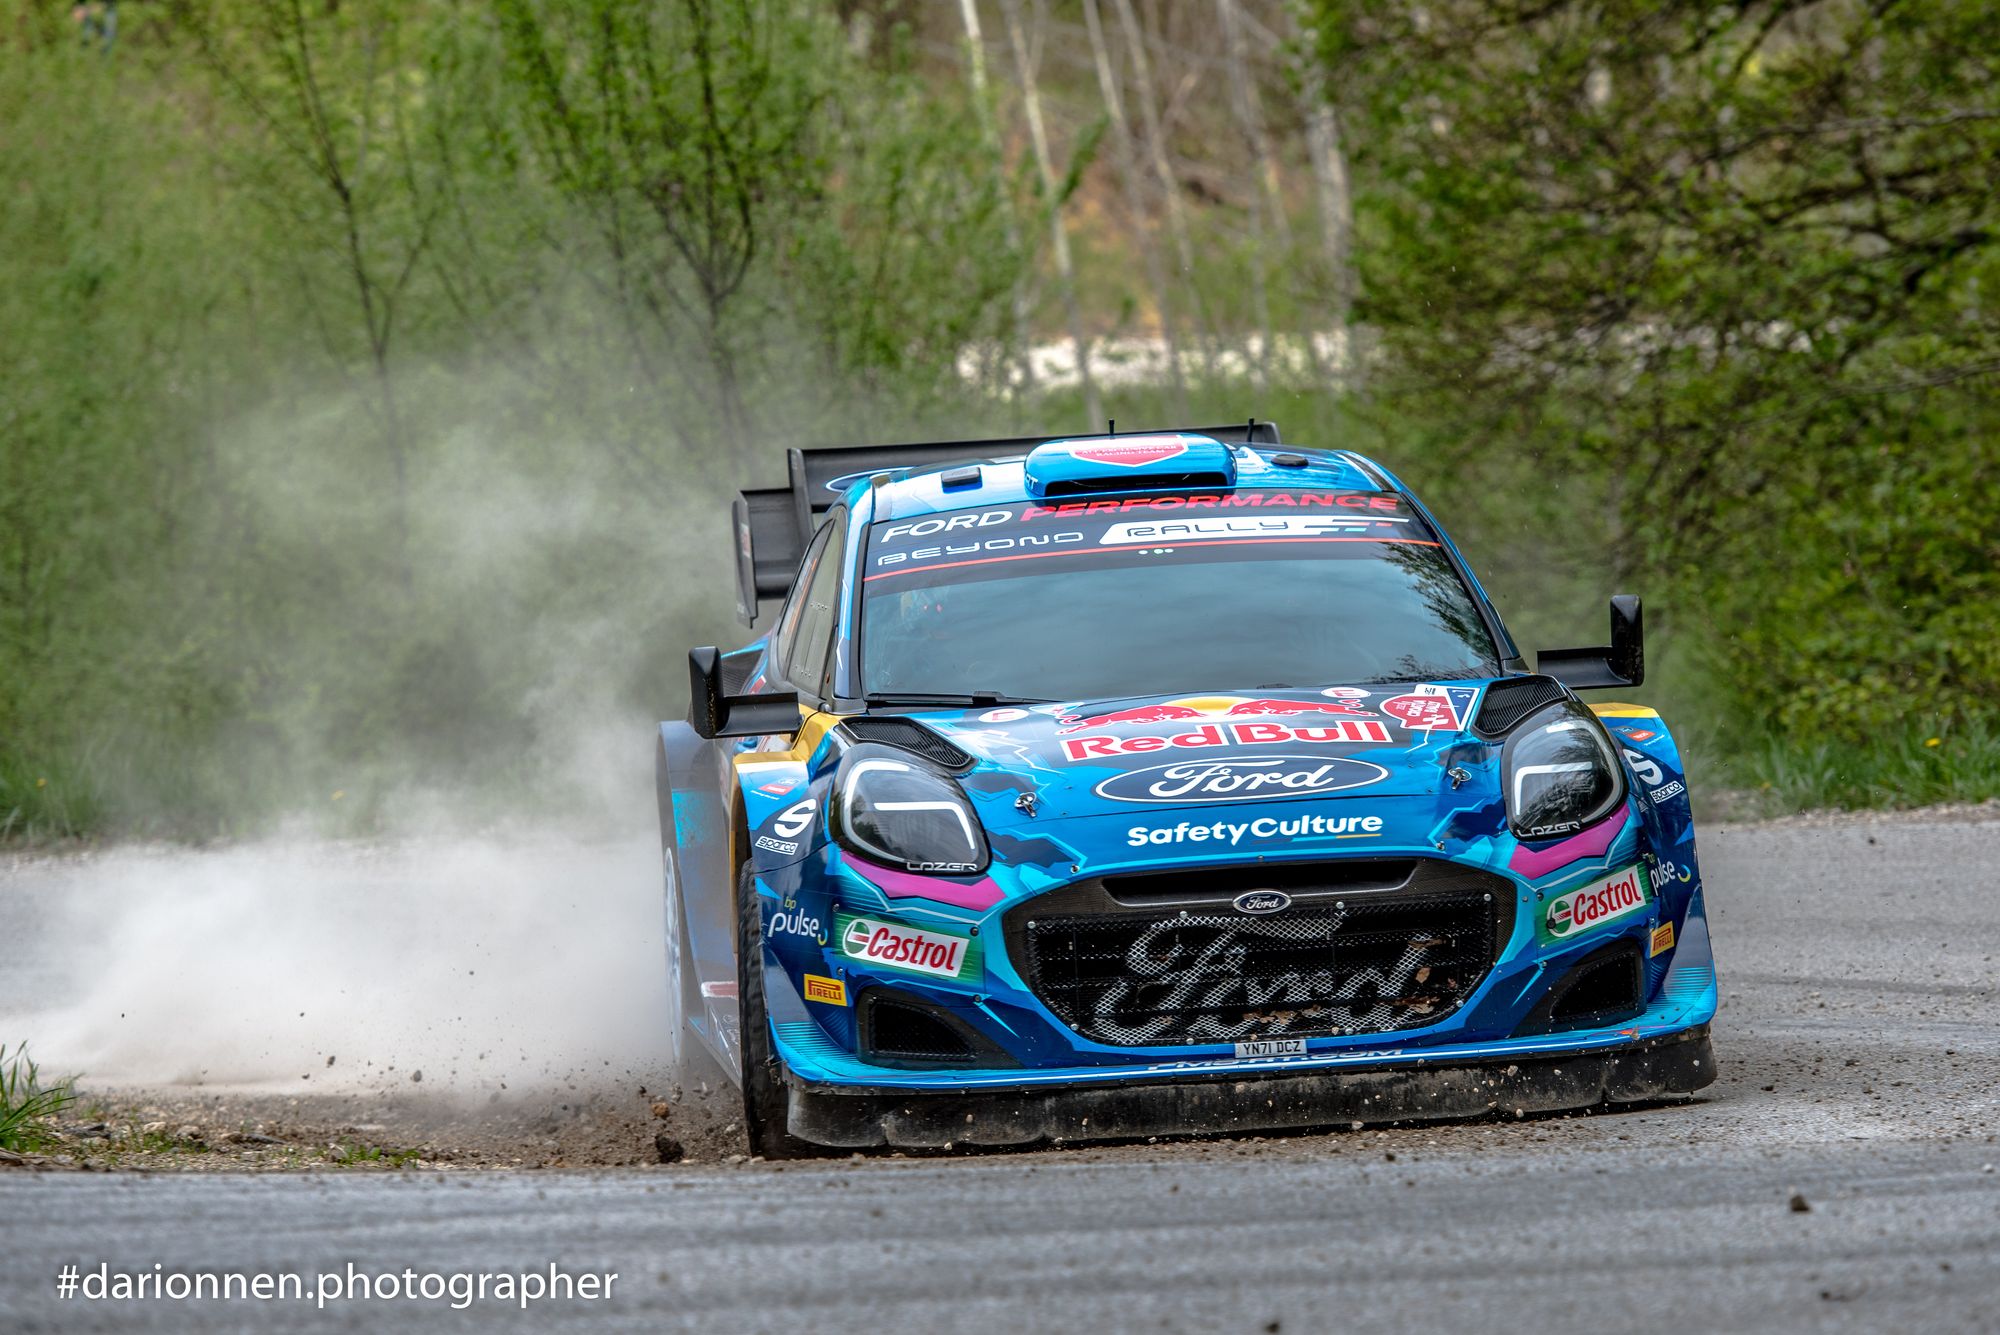 L'impegnativo asfalto croato metterà alla prova gli assi del WRC